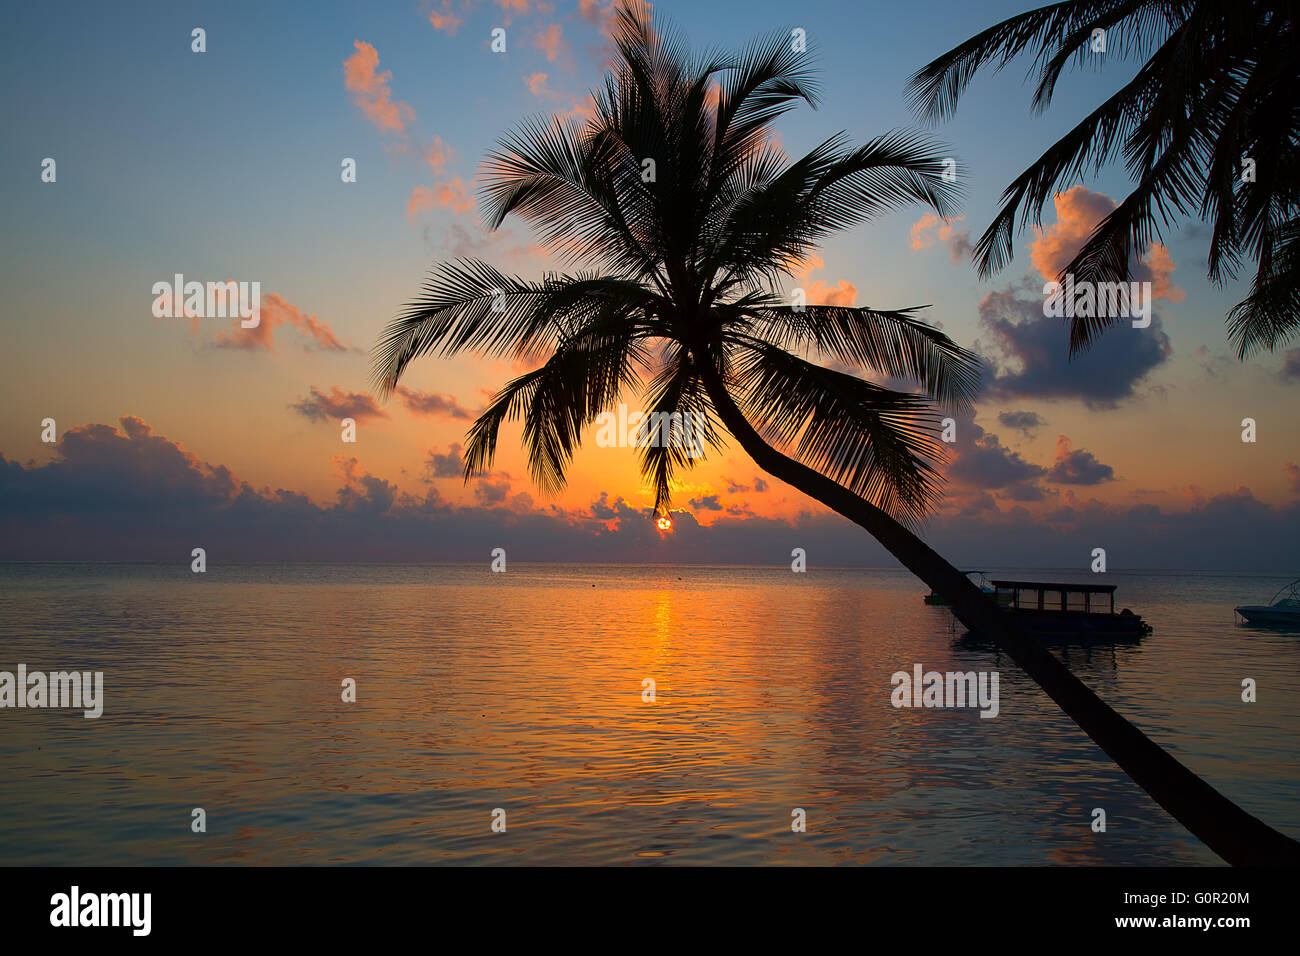 Sunset over ocean on Maldives Stock Photo